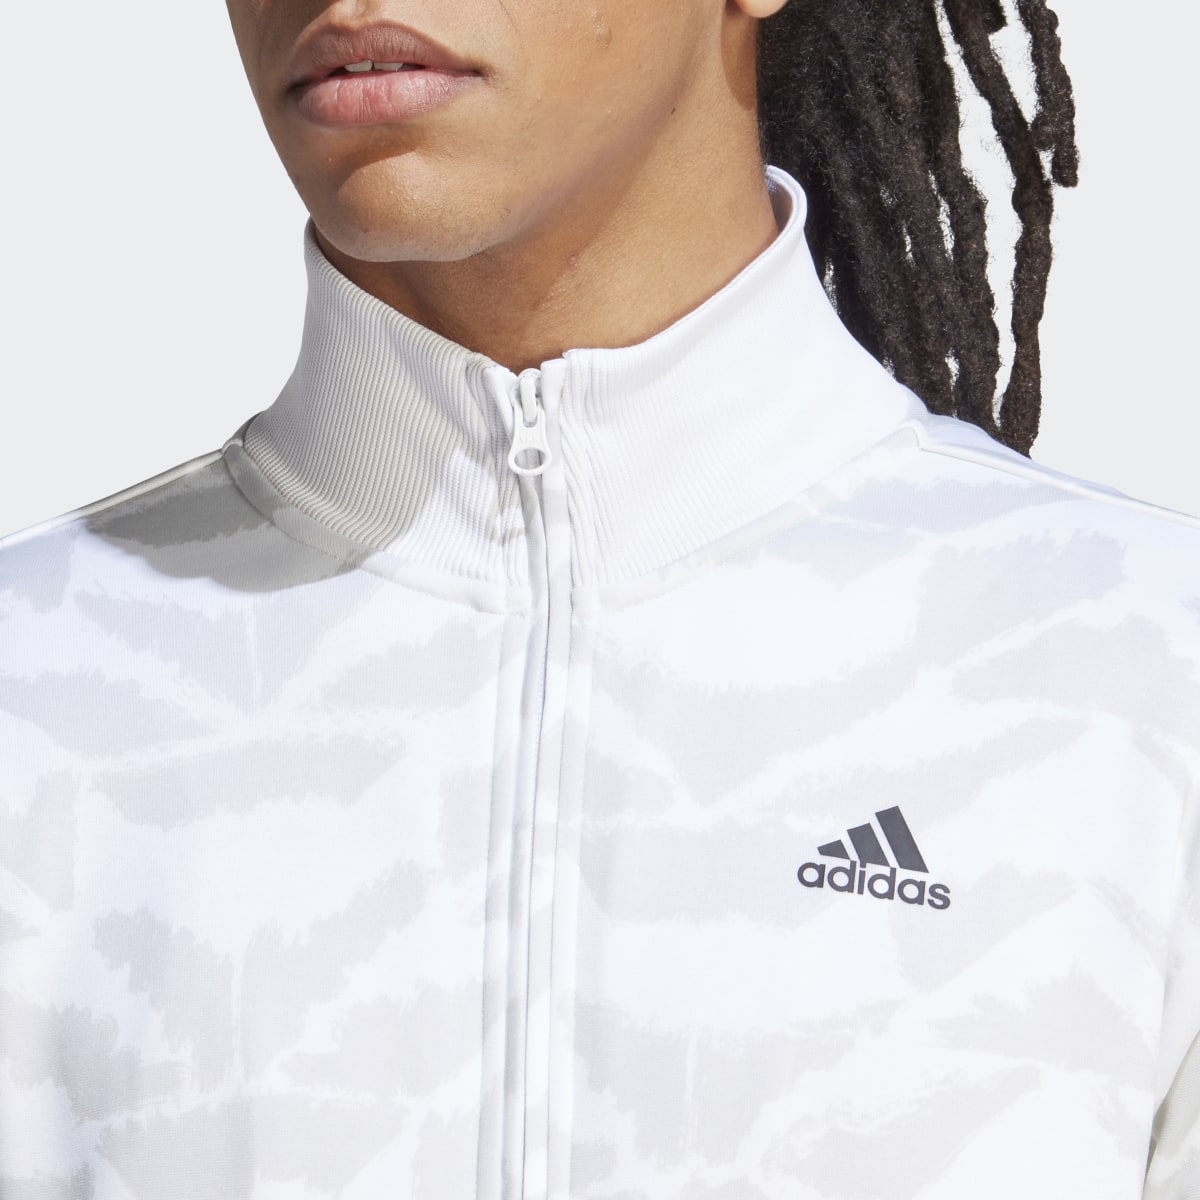 Adidas Tiro Suit Up Track Jacket. 6